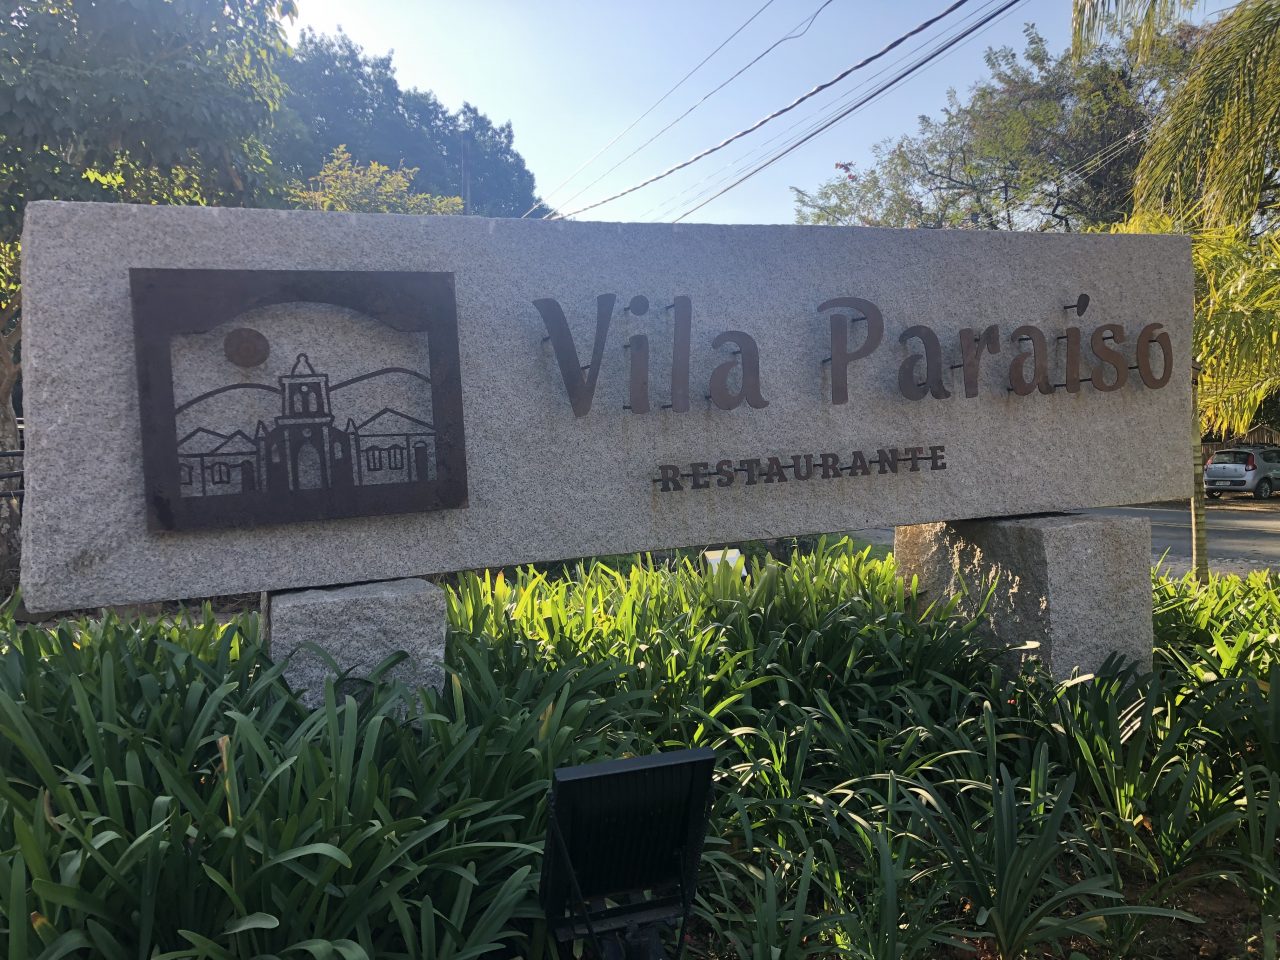 Vila Paraiso Placa Sporttechtips